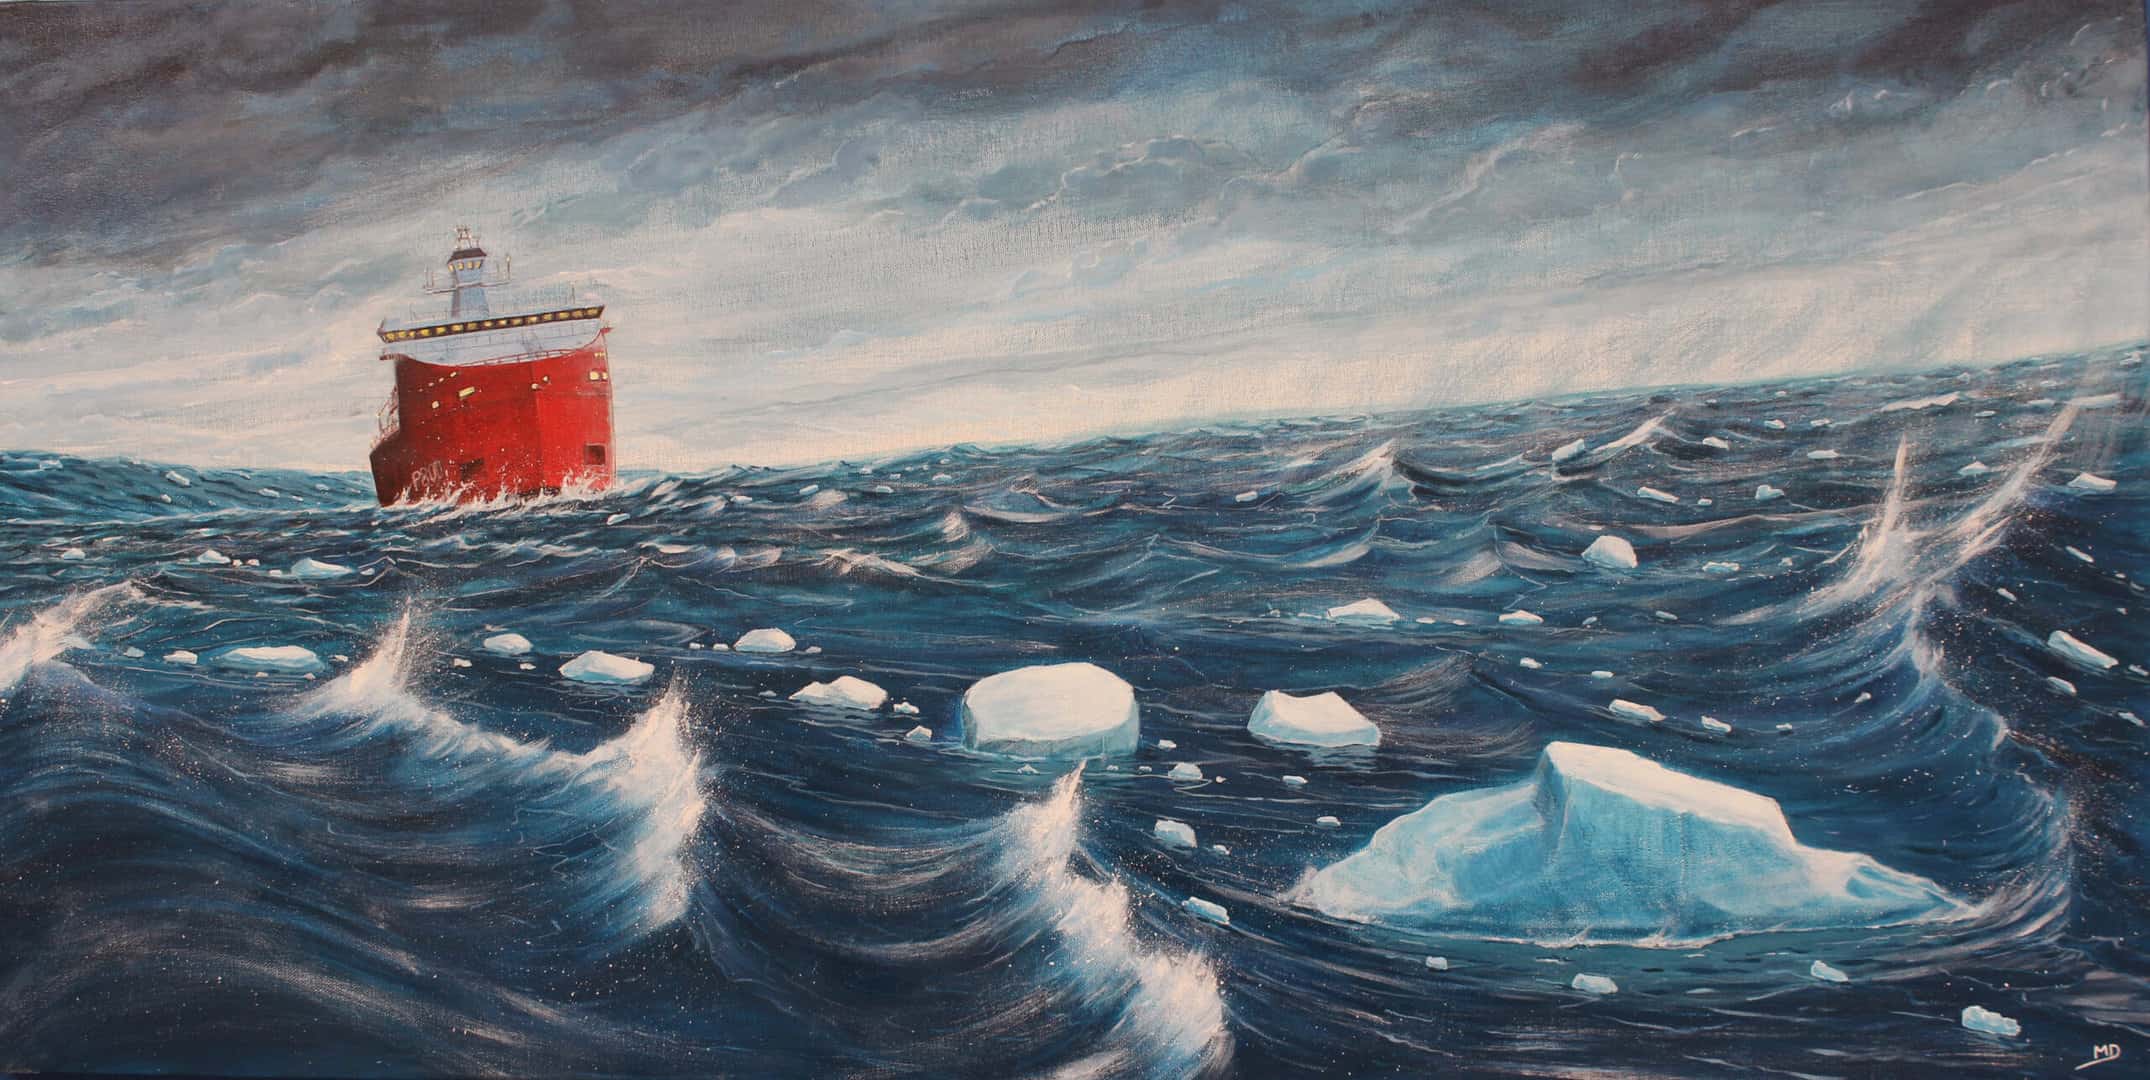 œuvre d'art, marine, acrylique sur toile 50/100cm, david morel artiste, l'astrolabe P800 sur une forte mer avec des blocs de glace en premier plan